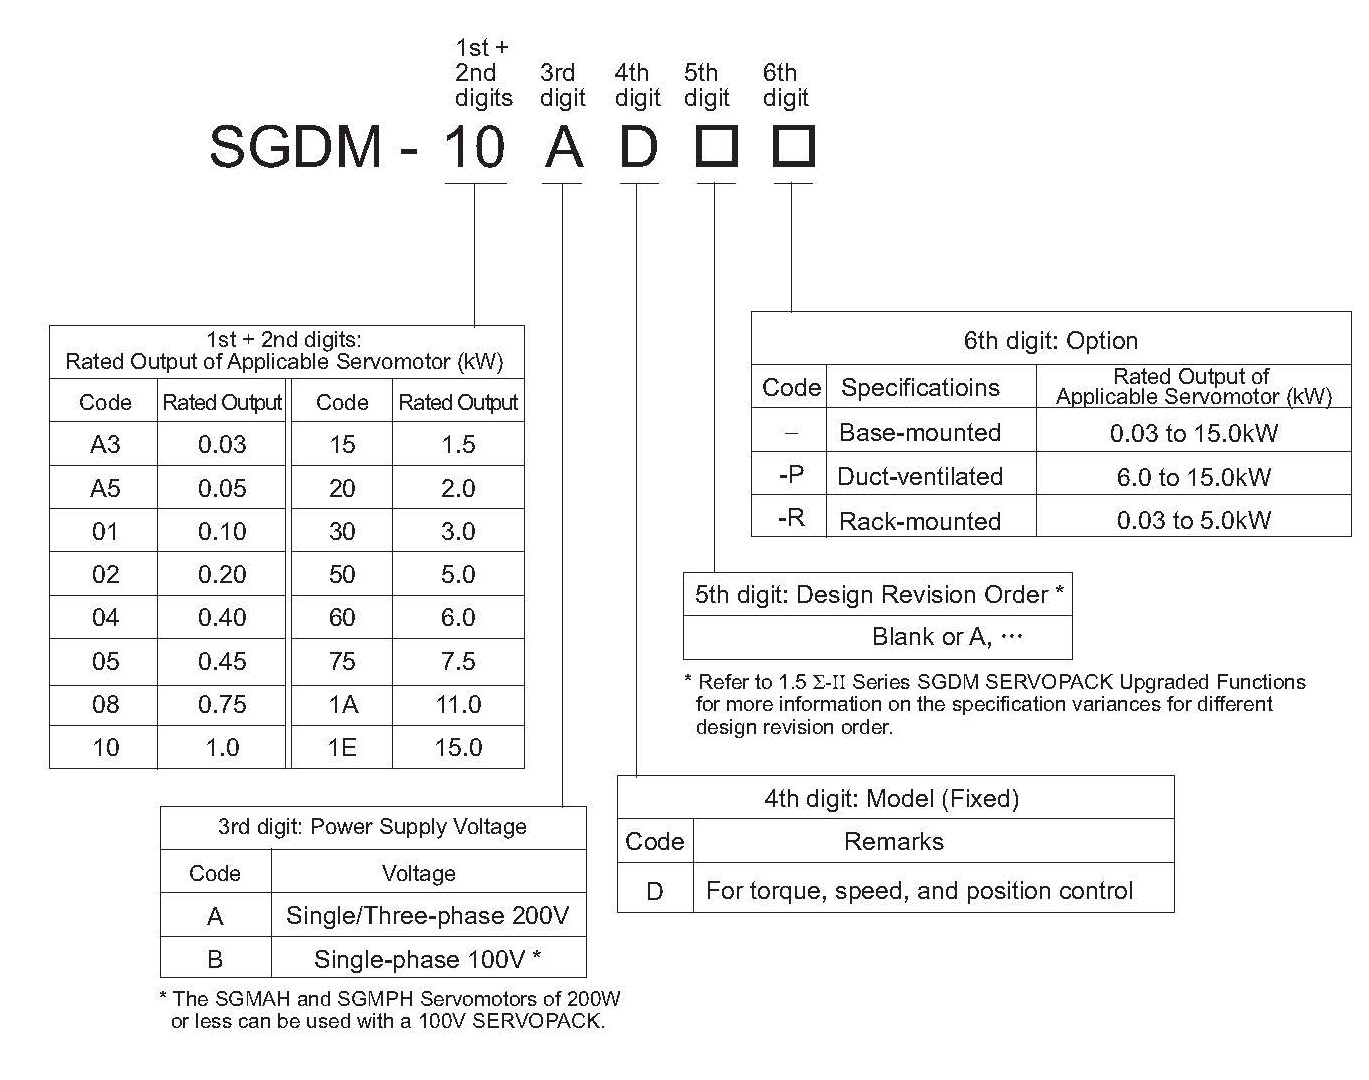 SGDM-02ADA spec